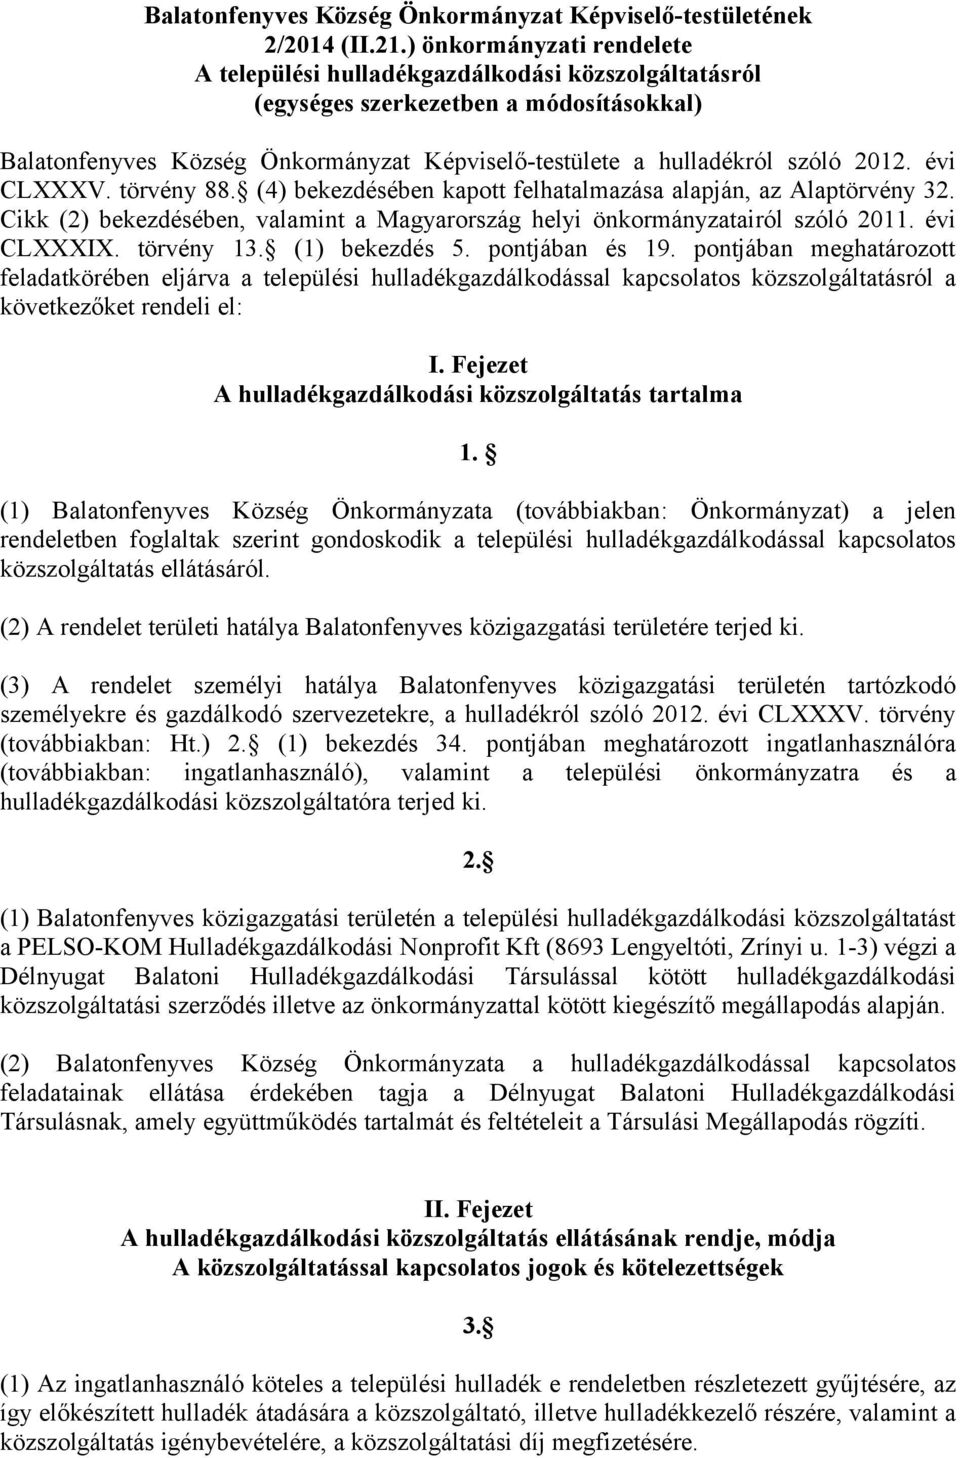 évi CLXXXV. törvény 88. (4) bekezdésében kapott felhatalmazása alapján, az Alaptörvény 32. Cikk (2) bekezdésében, valamint a Magyarország helyi önkormányzatairól szóló 2011. évi CLXXXIX. törvény 13.